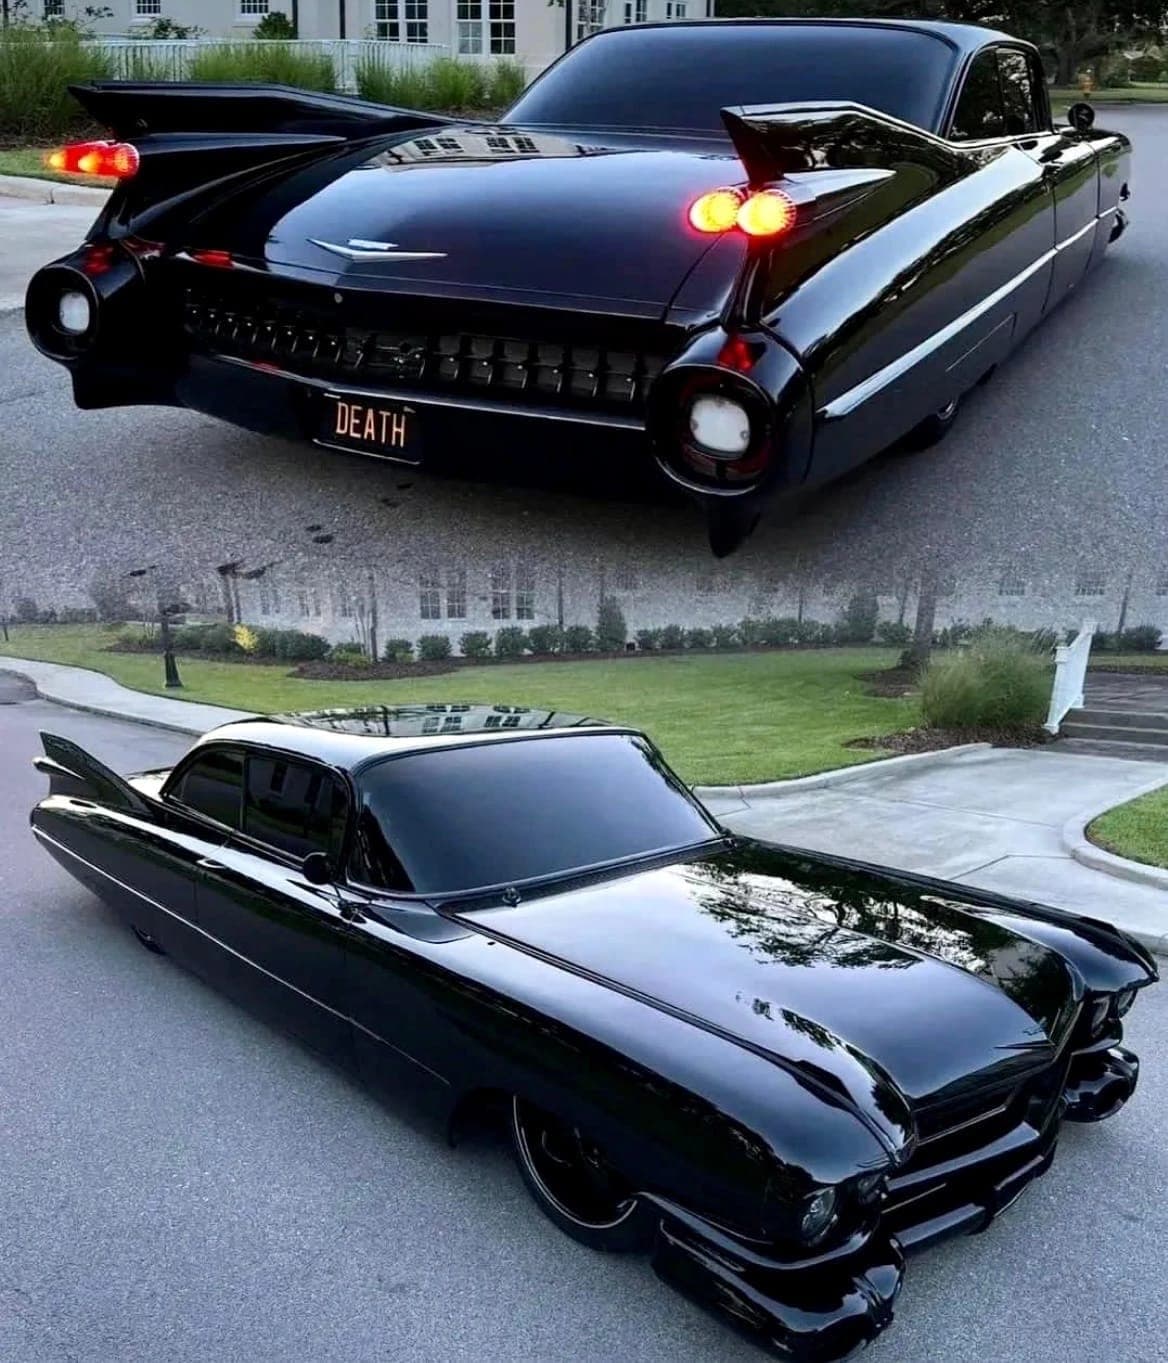 A customized 1959 Cadillac